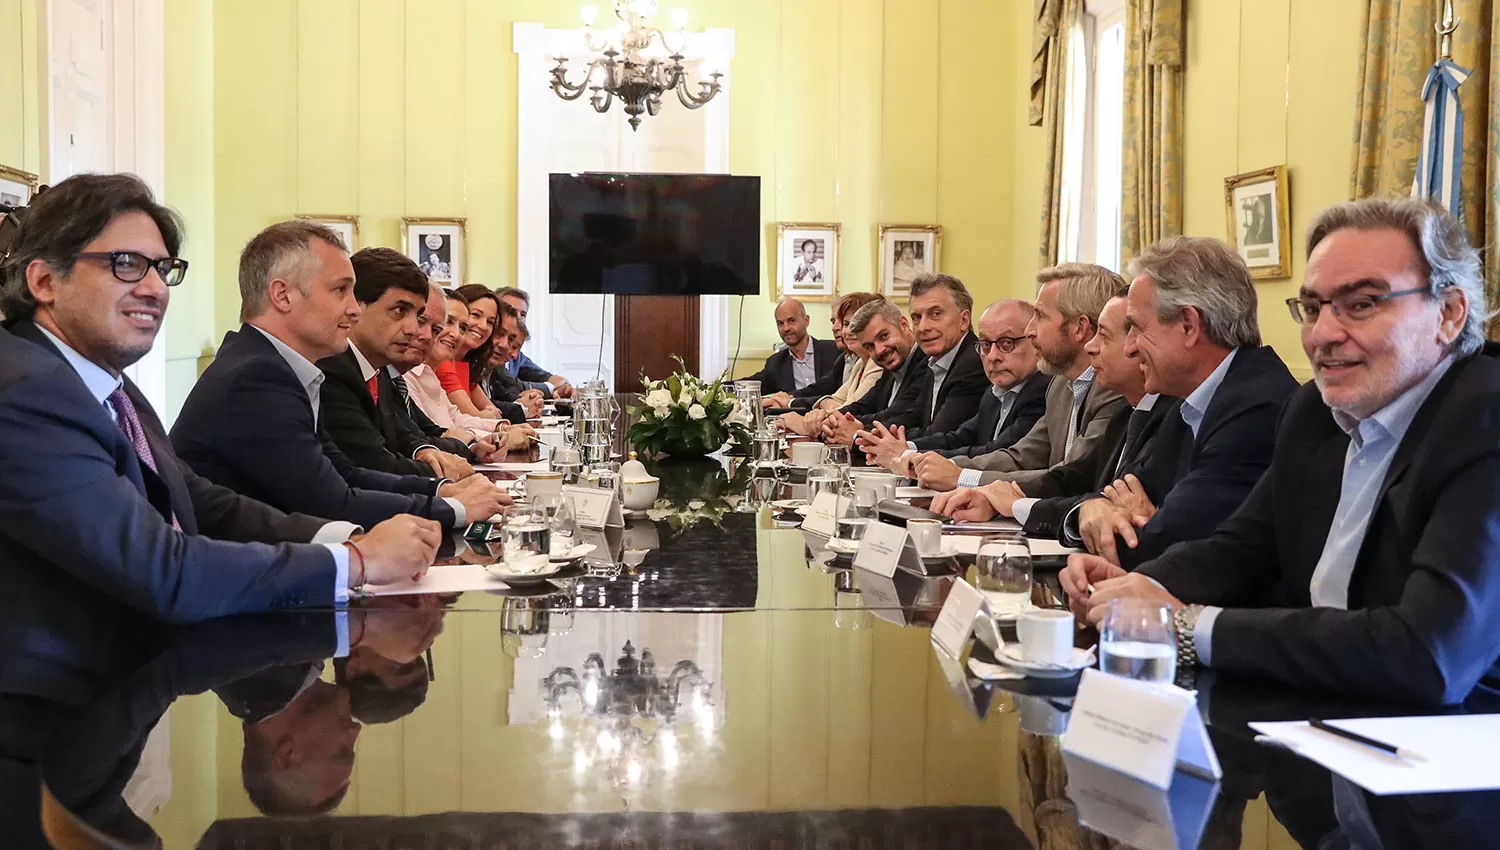 Una de las imágenes tomadas durante la reunión de Macri con su gabinete. TÉLAM